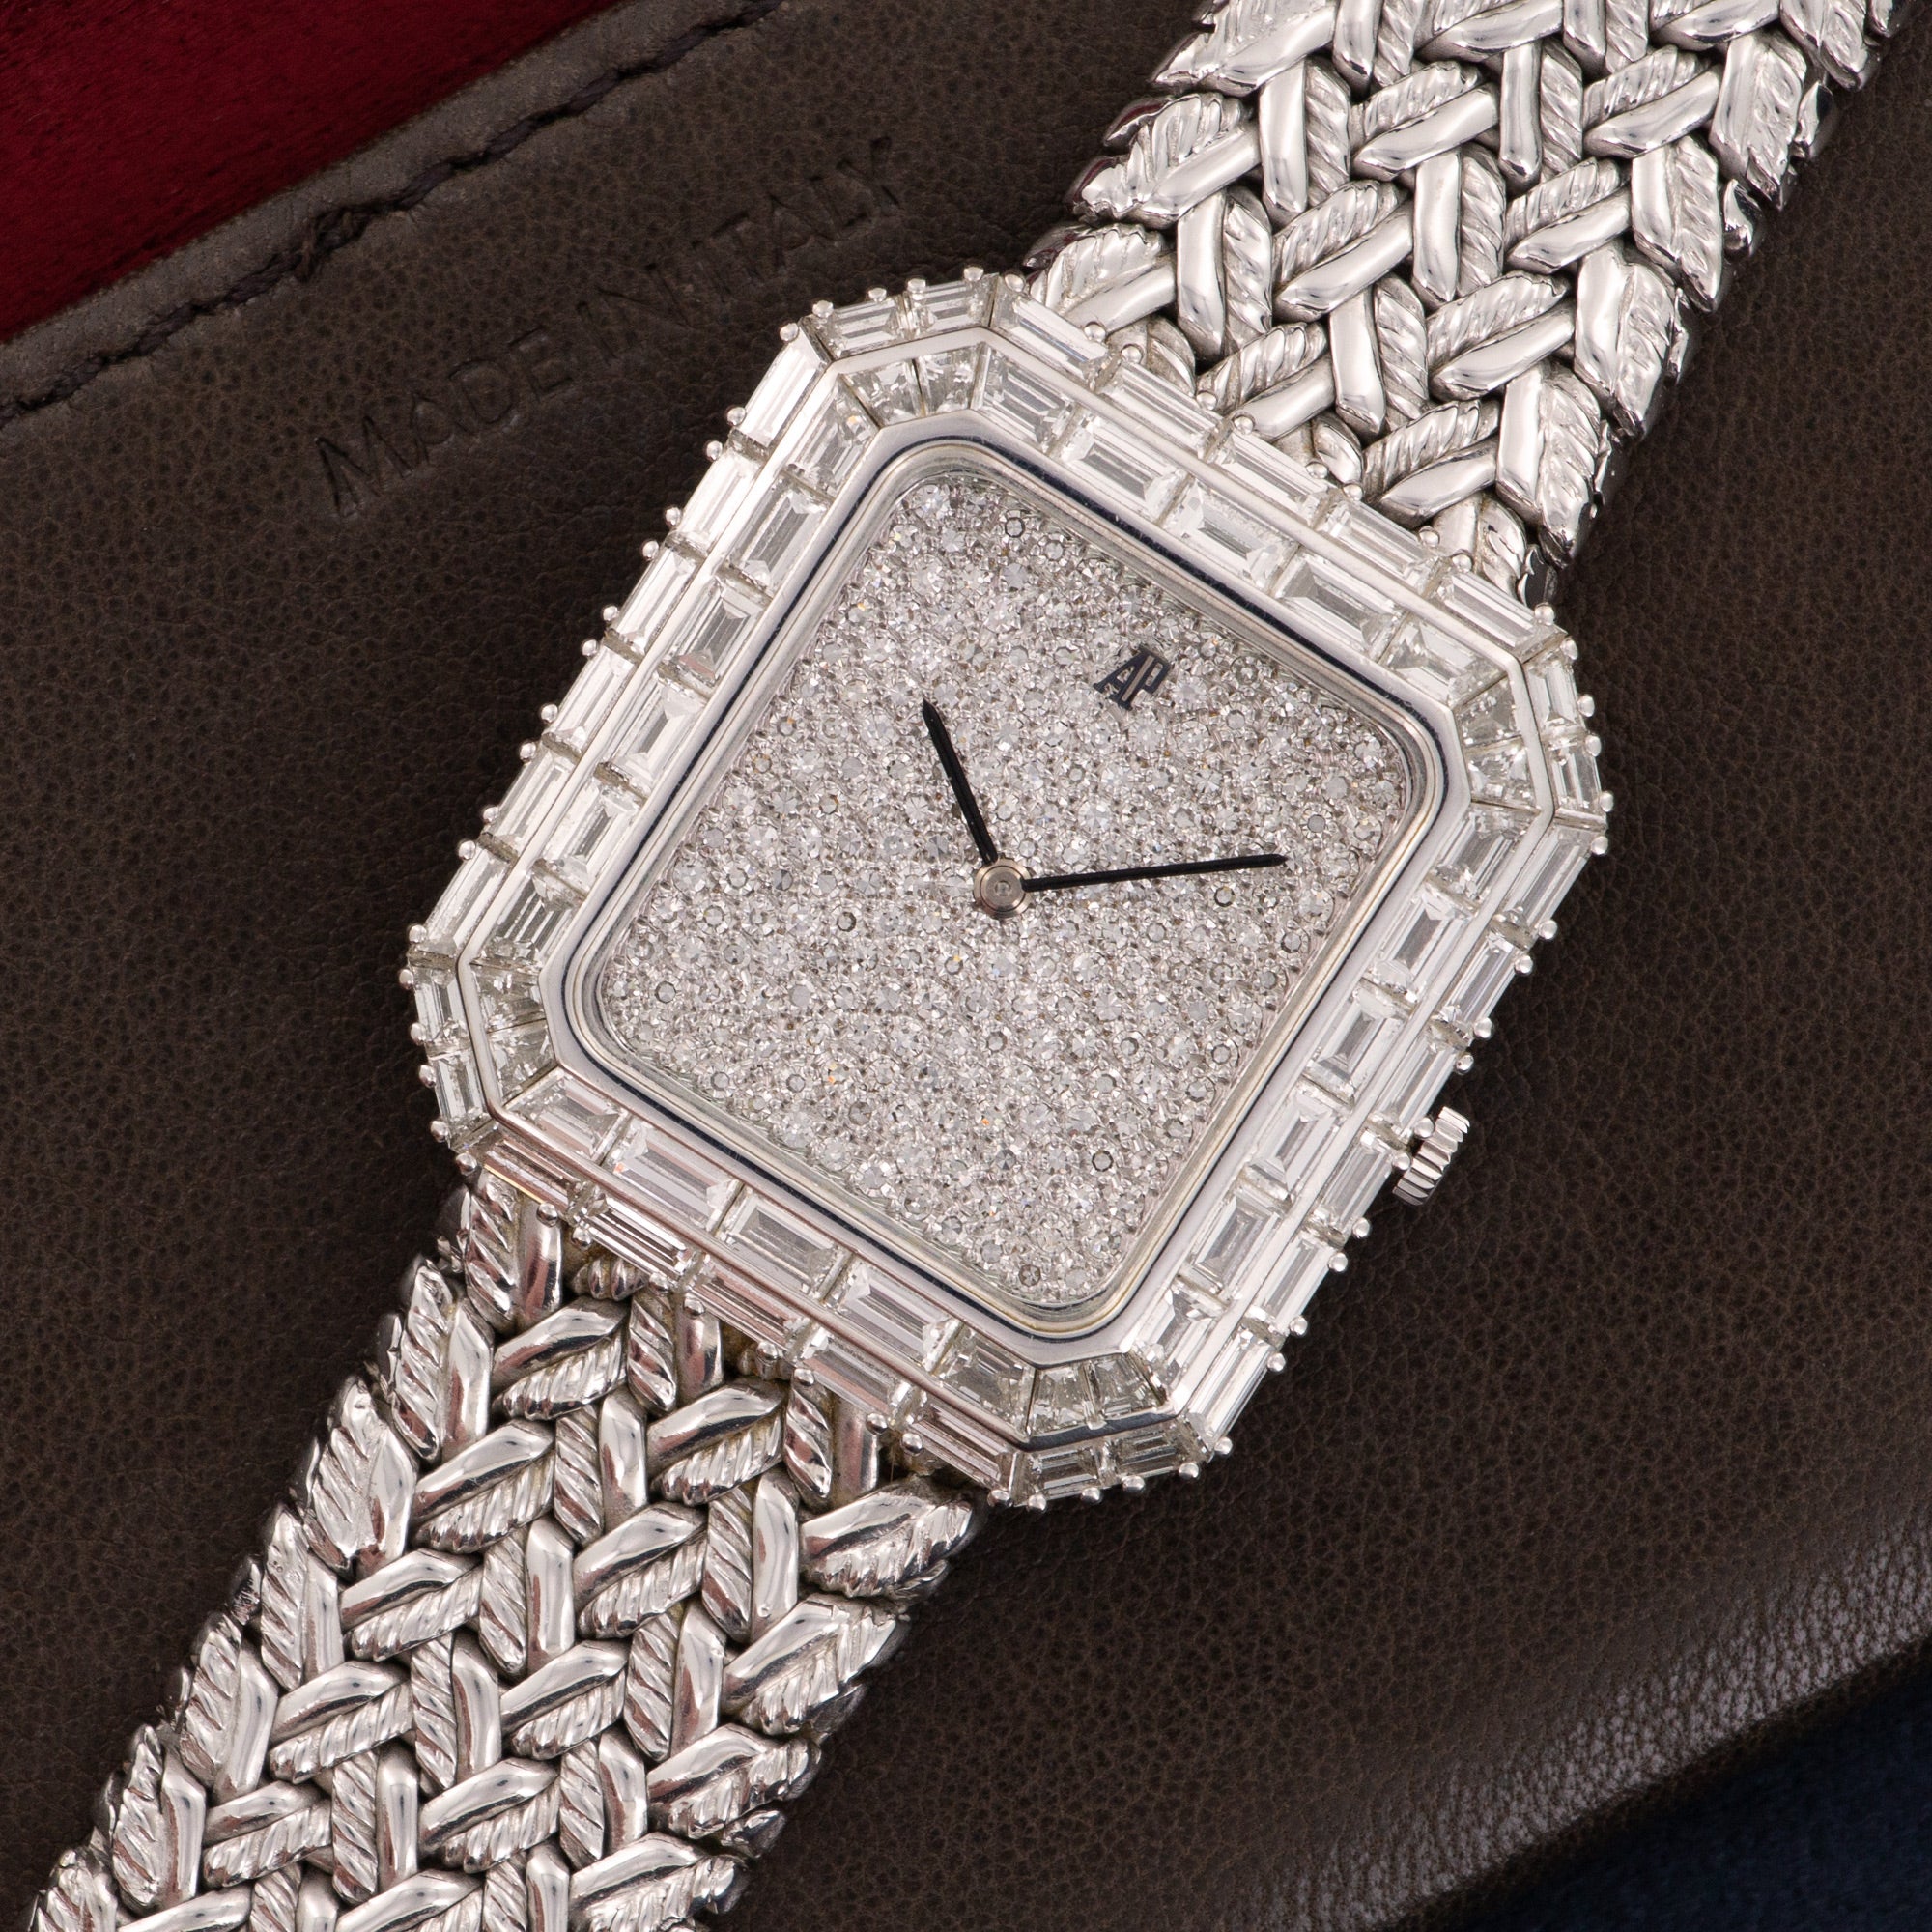 Audemars Piguet - Audemars Piguet White Gold Baguette Diamond Watch - The Keystone Watches